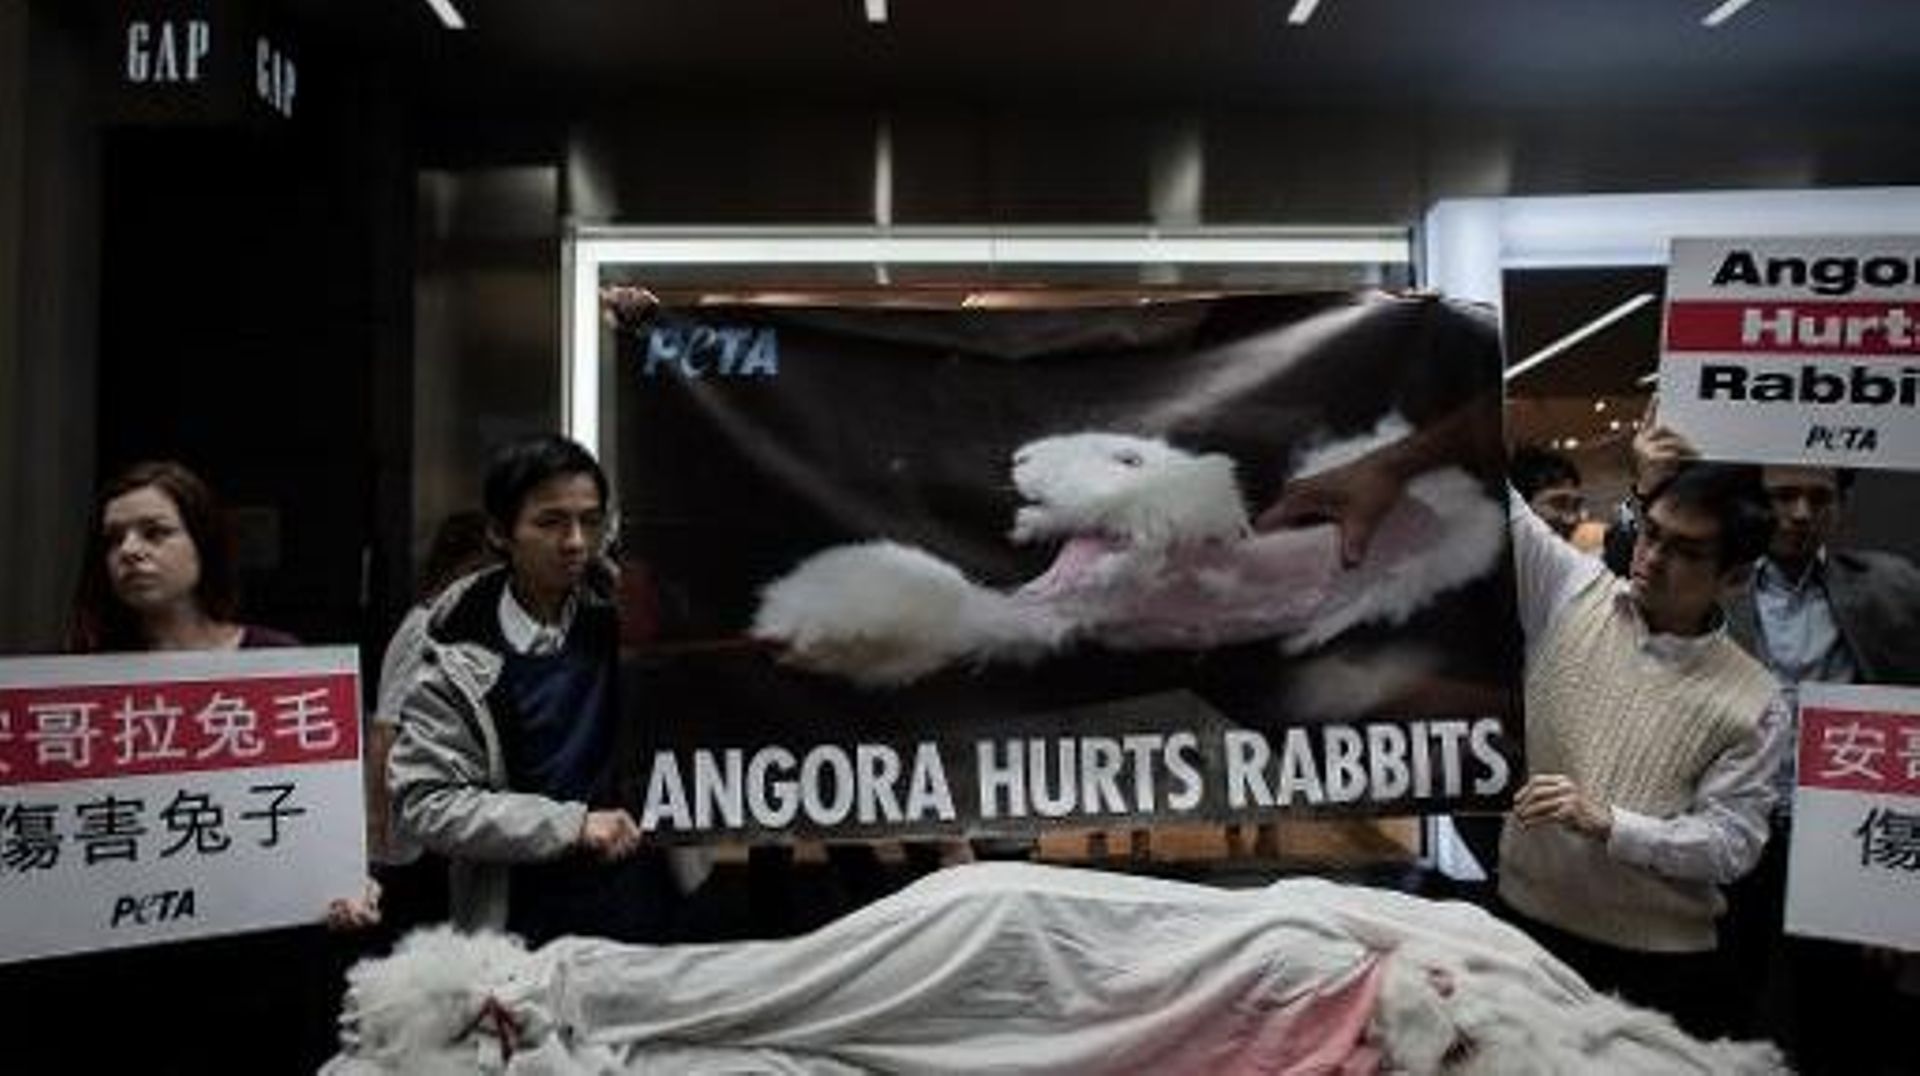 Manifestation à Hong Kong contre la maltraitance des lapins dans la production d'angora, le 8 janvier 2014